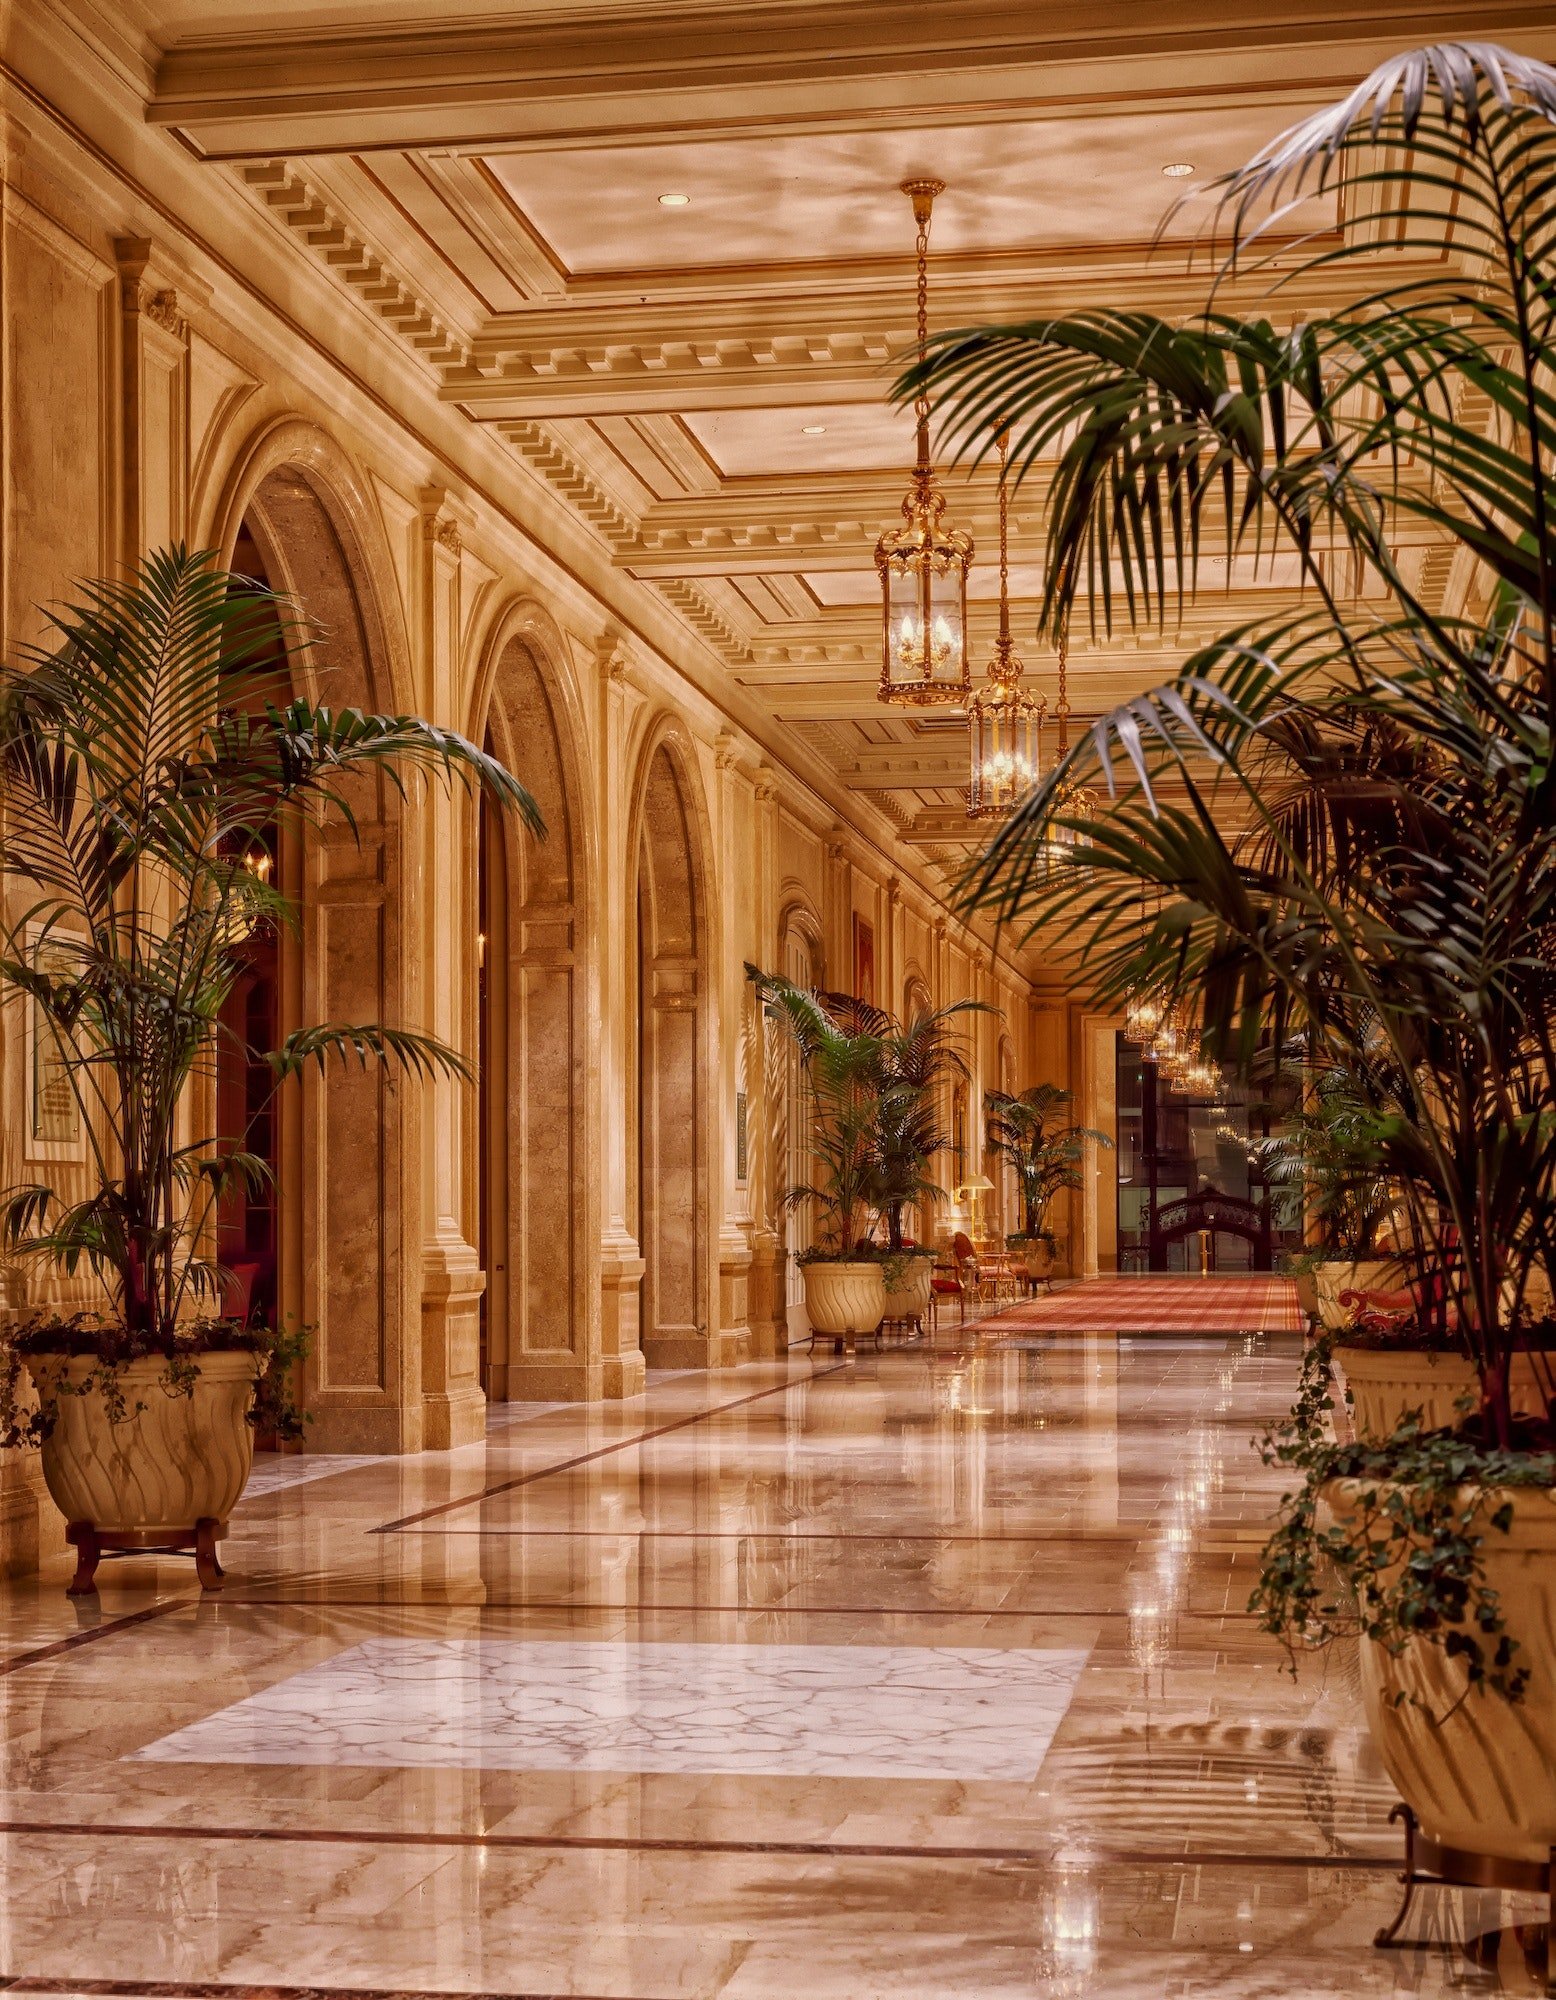 Jeremy wartete auf seine Tochter in einem luxuriösen 5-Sterne-Hotel. | Quelle: Pexels